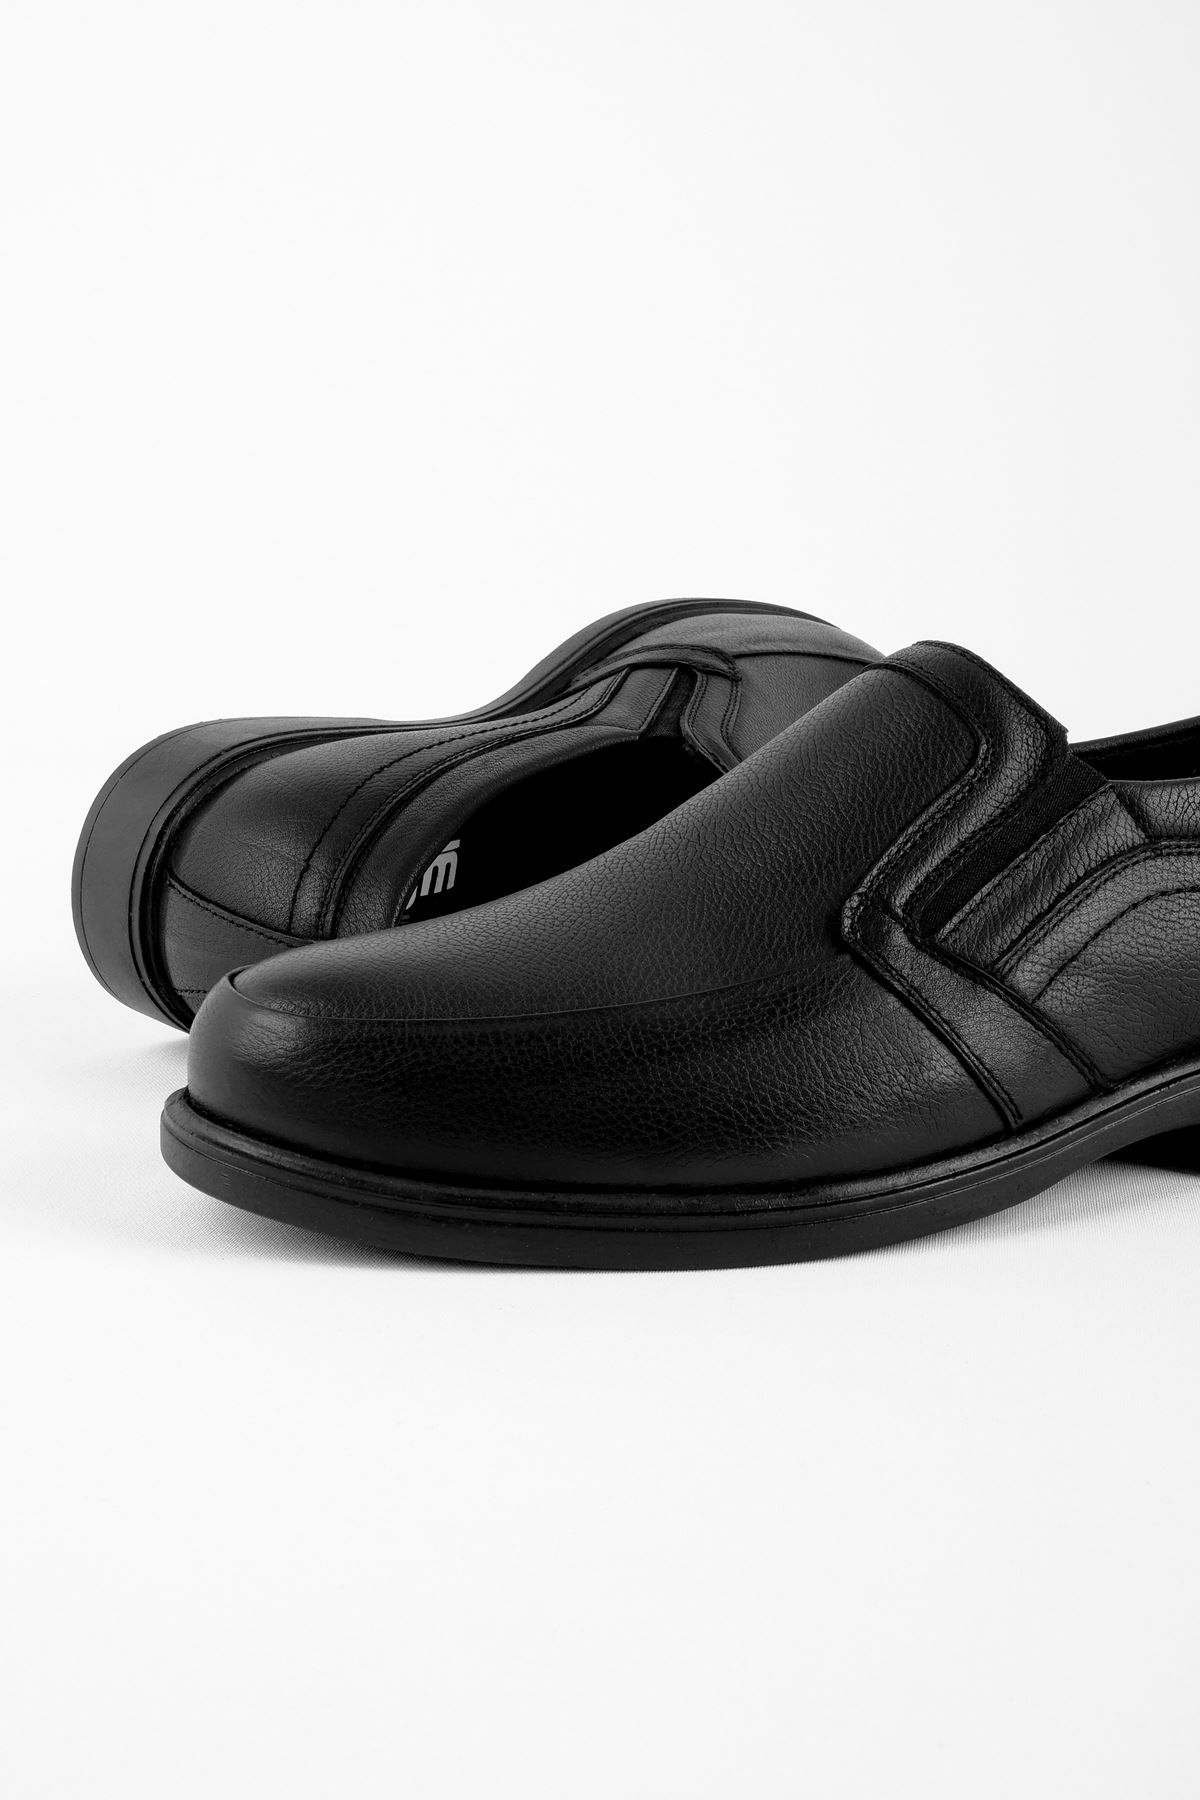 Jadira Hakiki Deri Erkek Ayakkabı Klasik-siyah